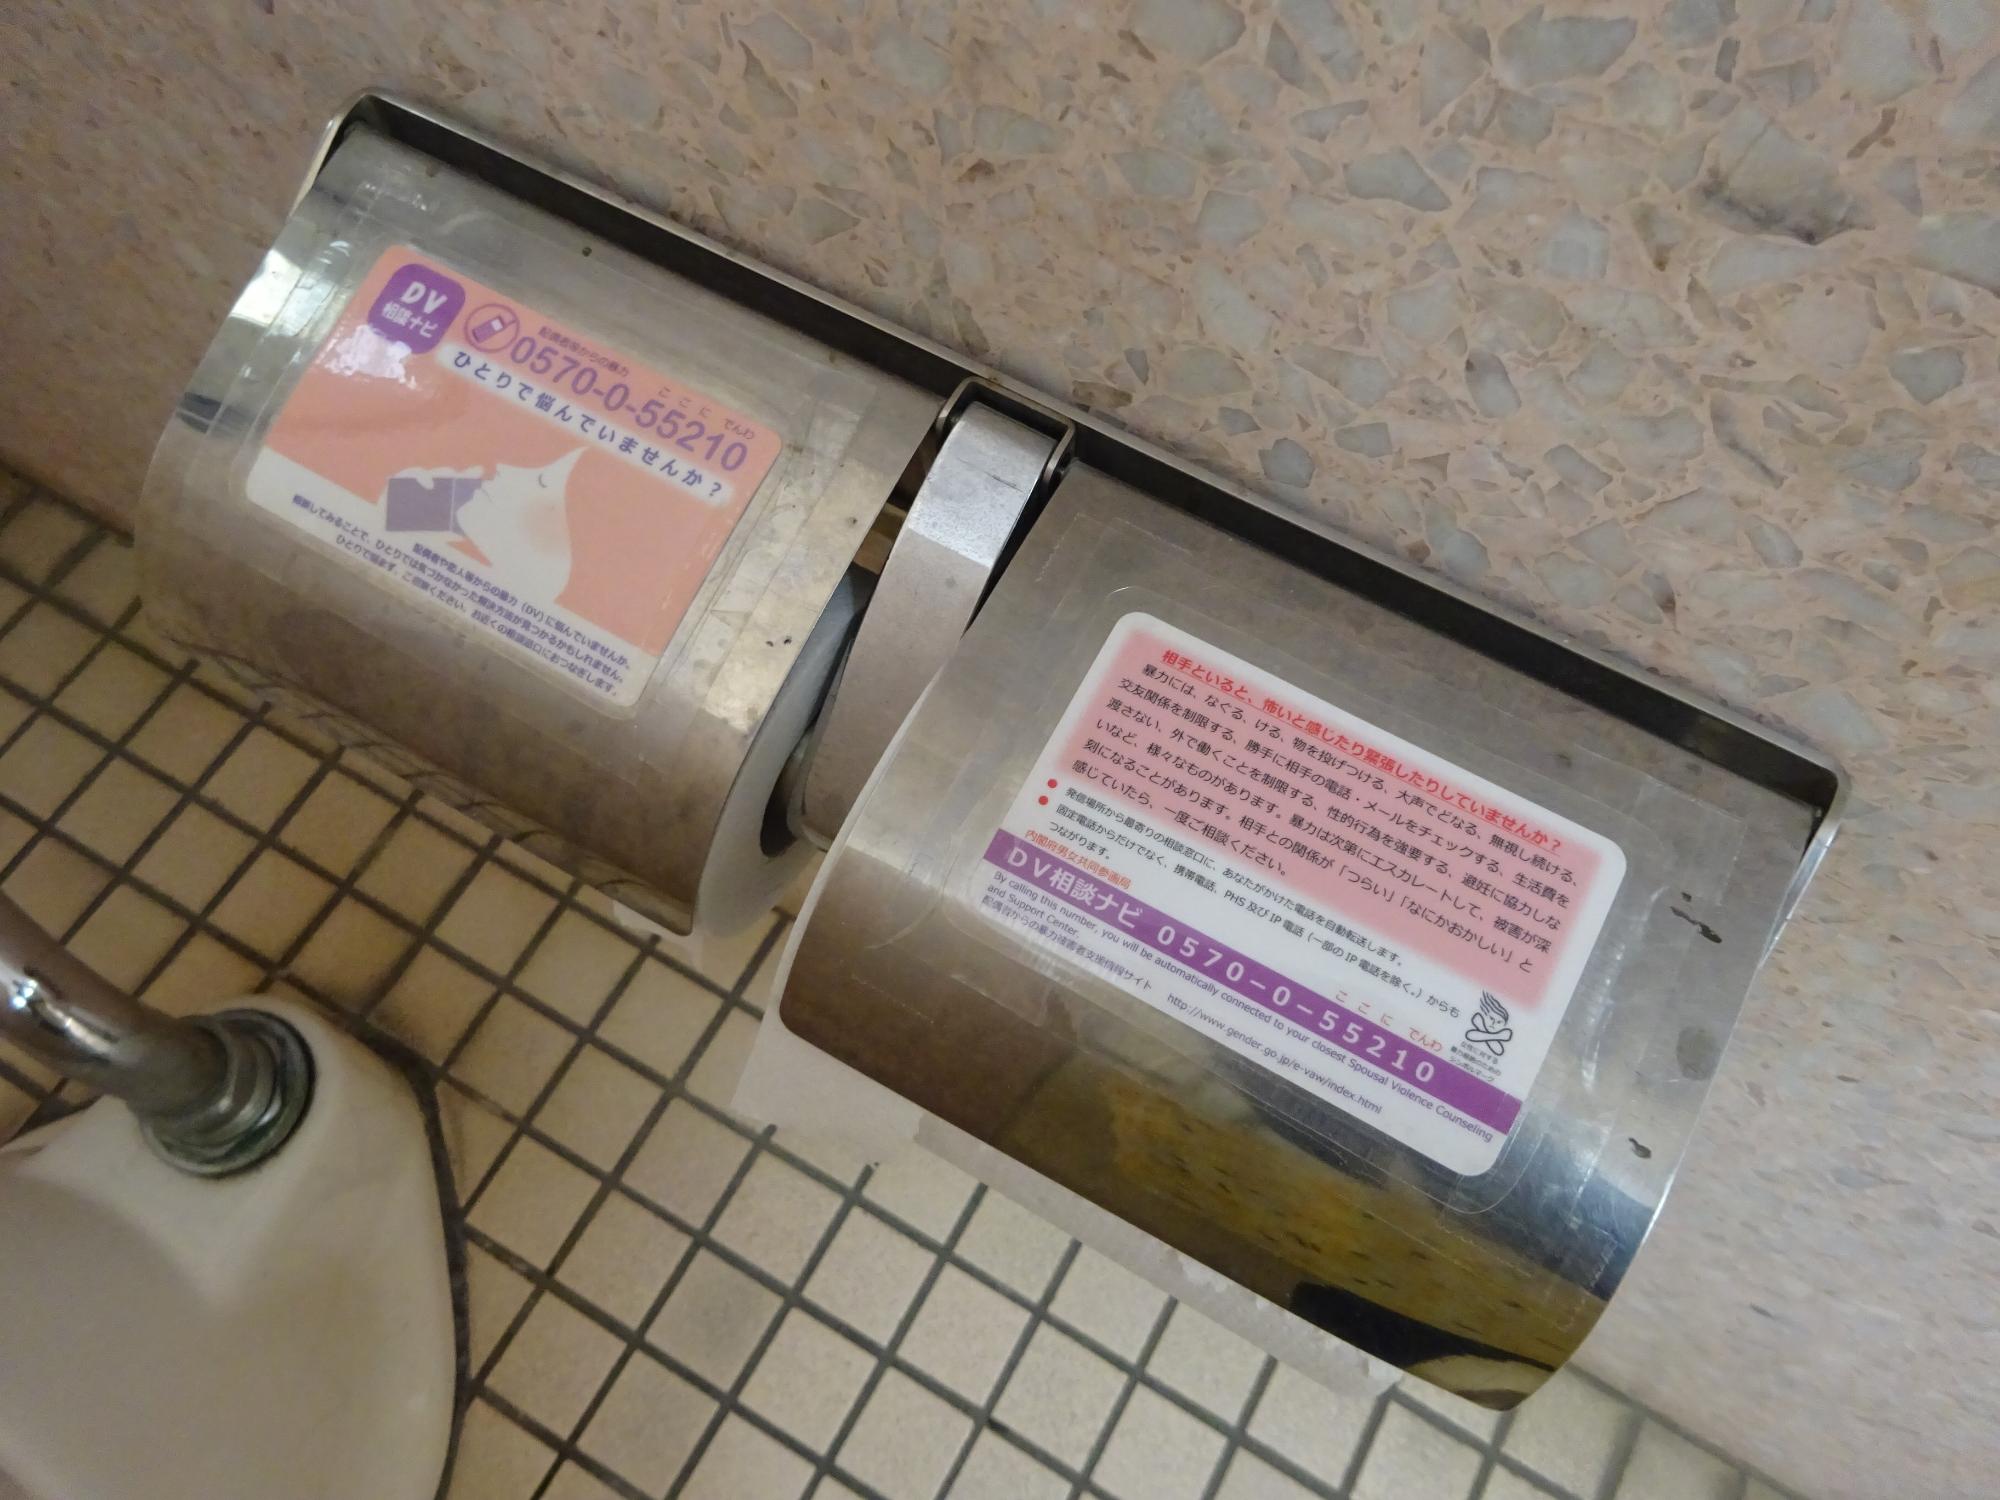 和式トイレ内のトイレットペーパーホルダーのシルバーのカバー部分にDV相談ナビカードが貼られている写真